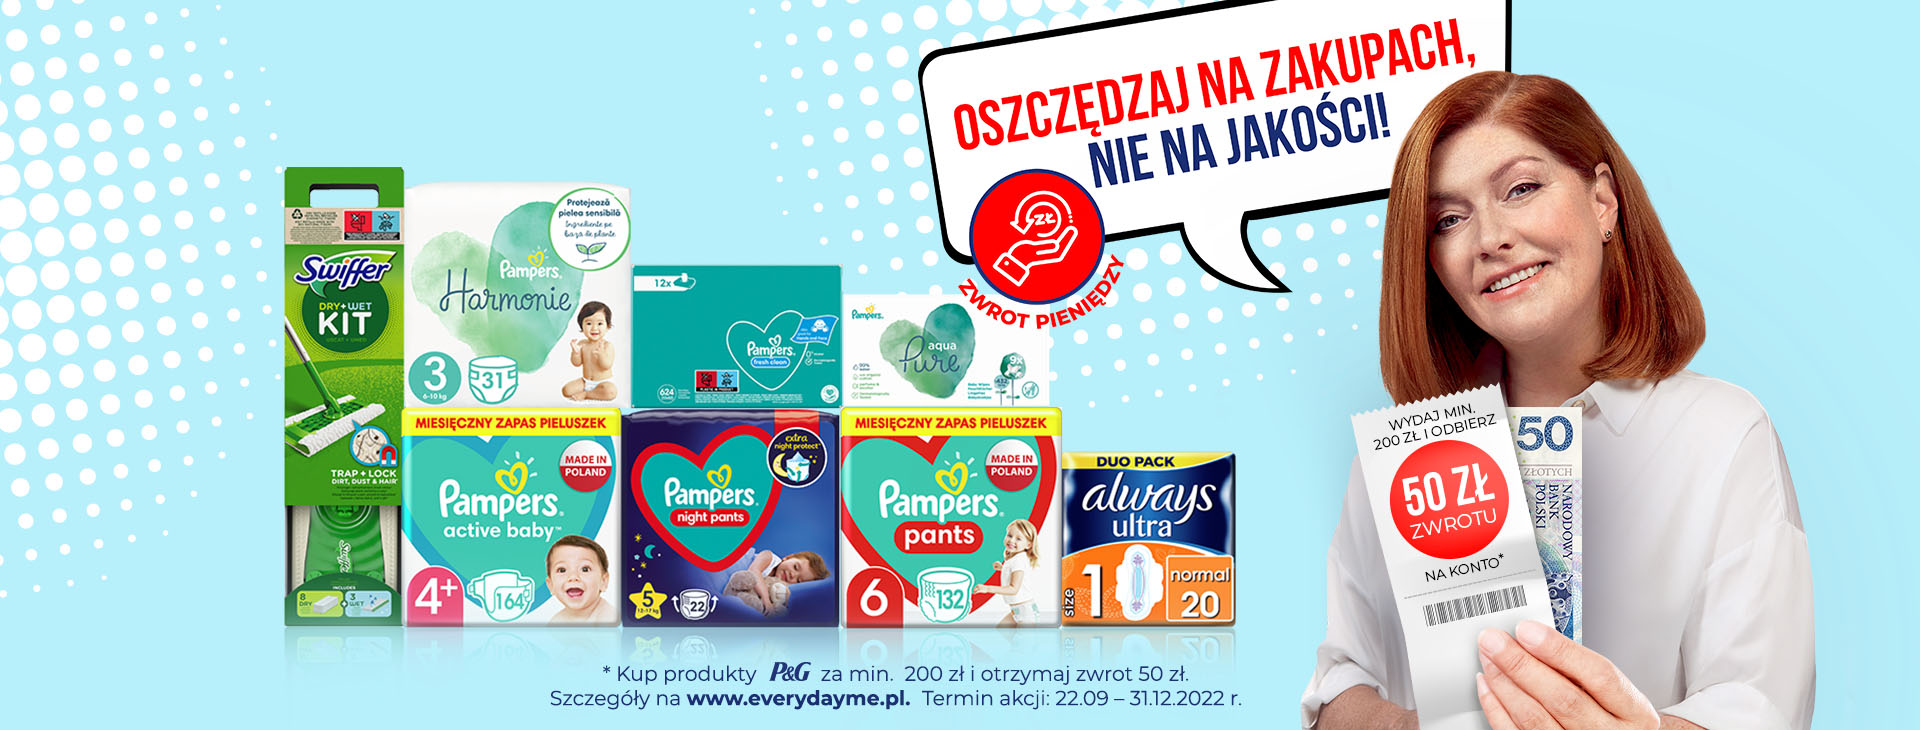 pampers polska reklamacje